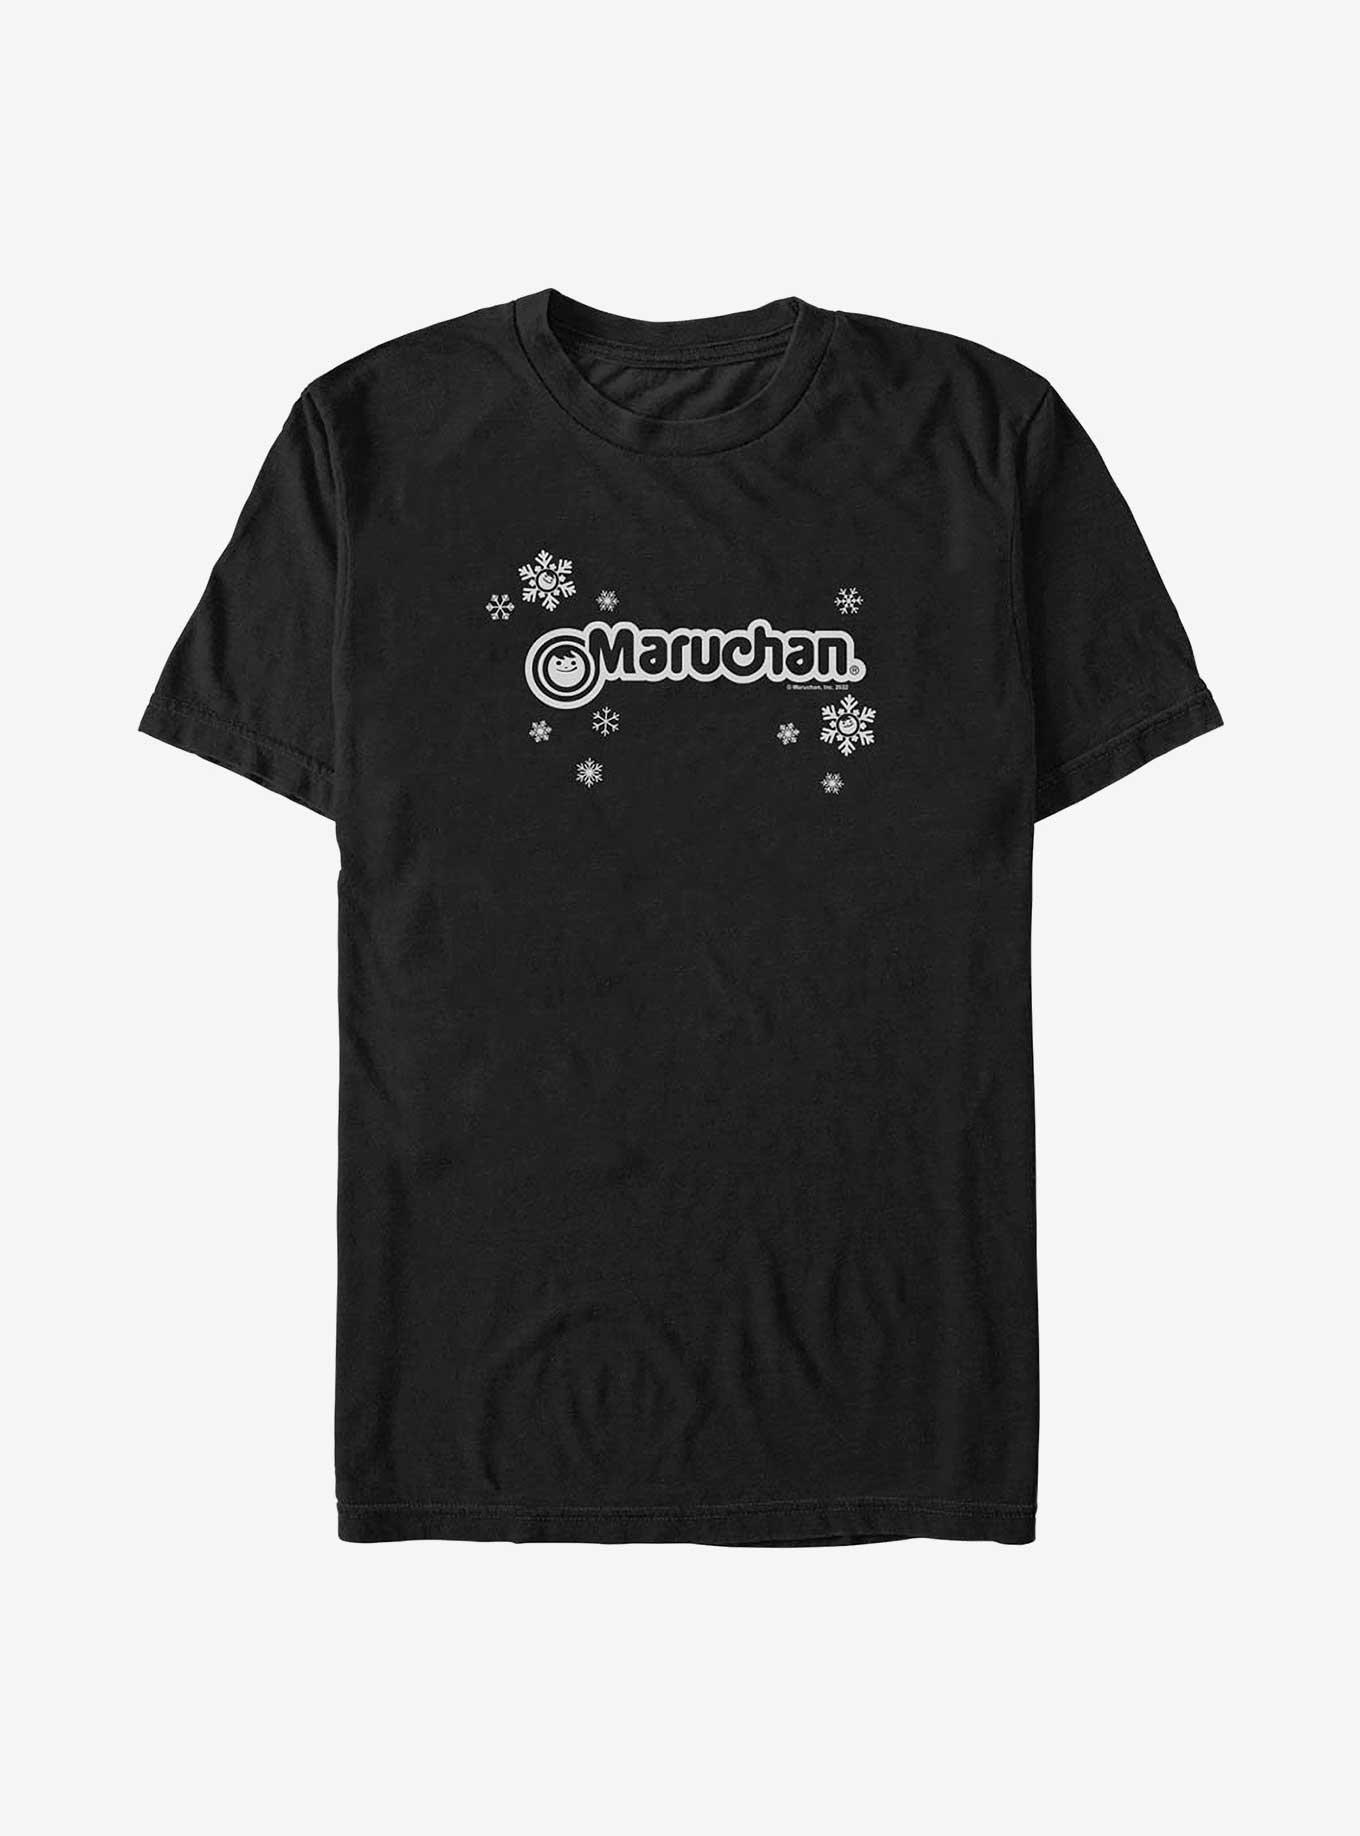 Maruchan Snowflakes T-Shirt